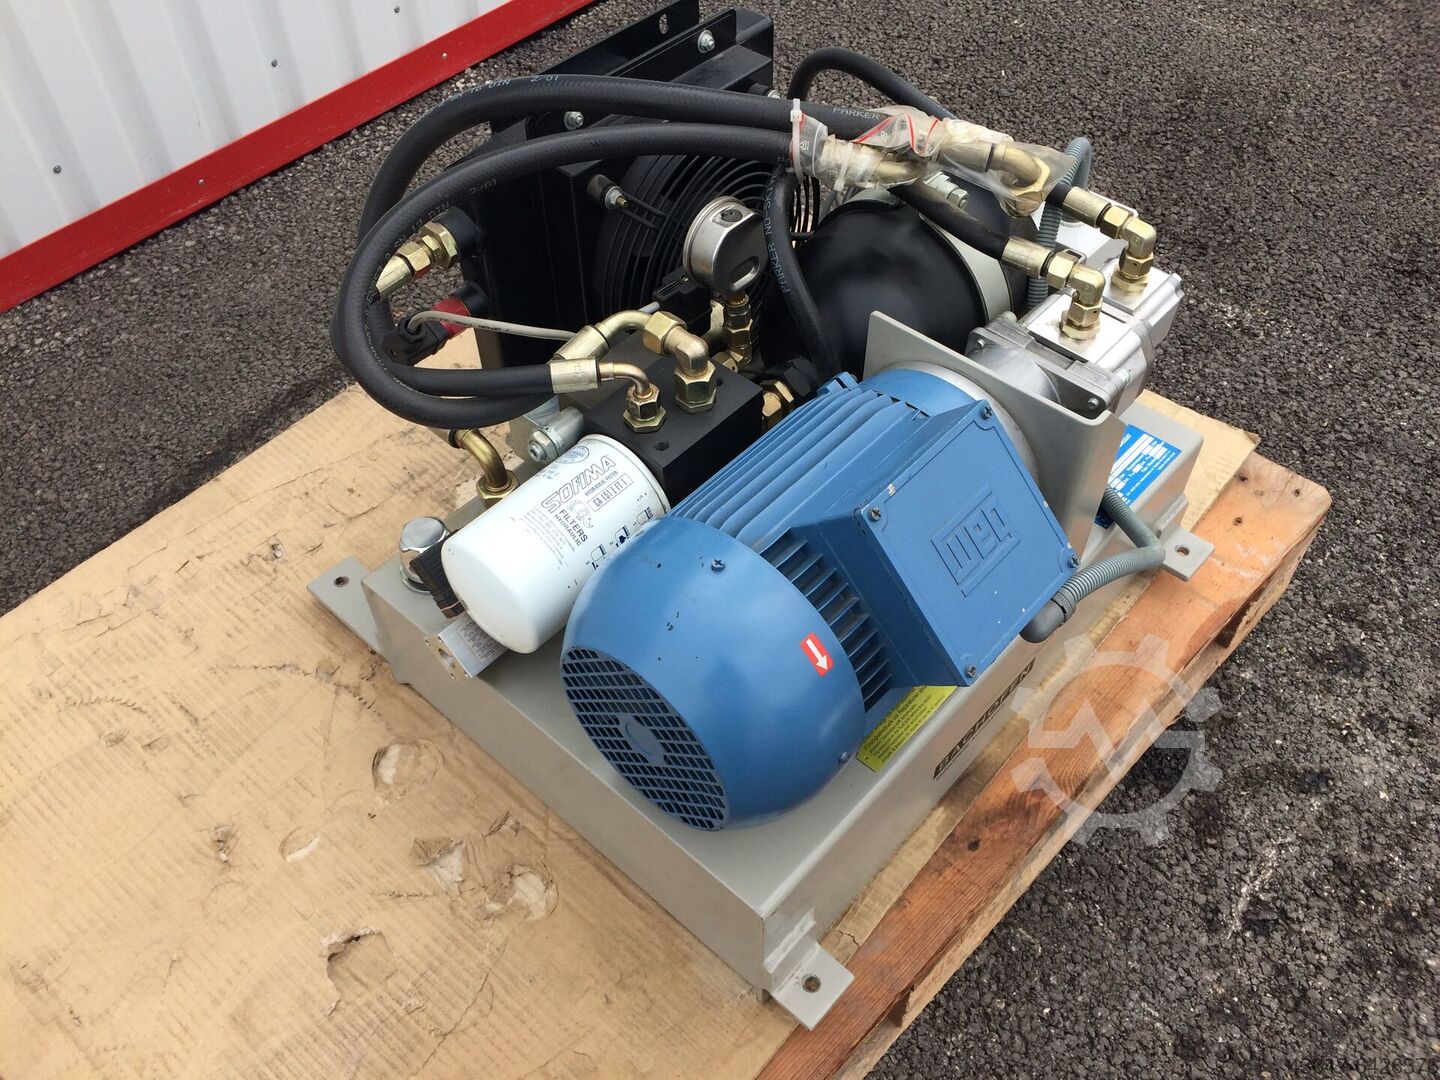 Hydraulikpumpe 230V 2,2kW